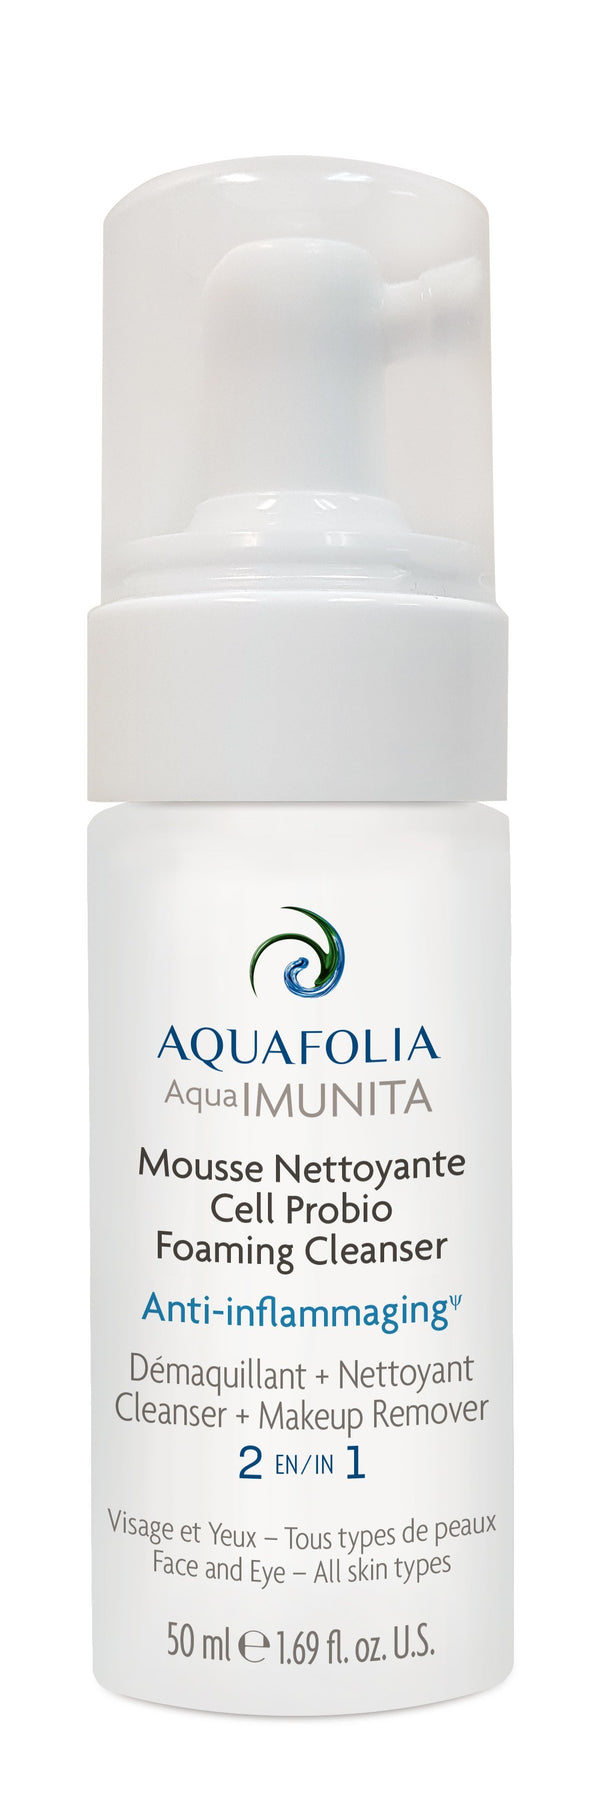 Mousse Nettoyante Cell Probio - cliniqueconceptm